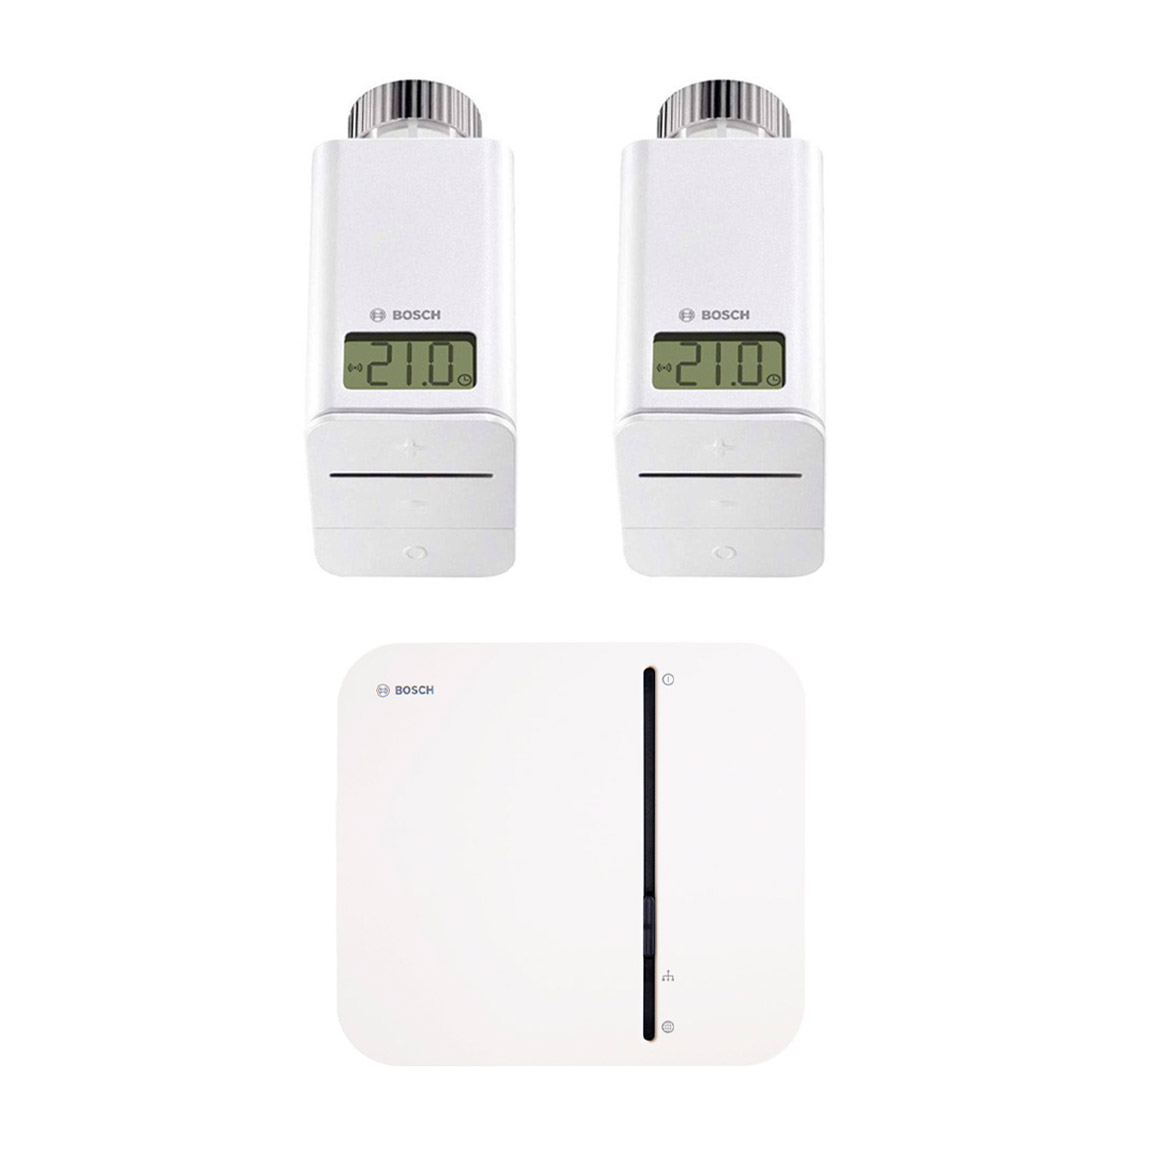 Bosch Smart Home - Starter Set Heizung mit 2 Thermostaten